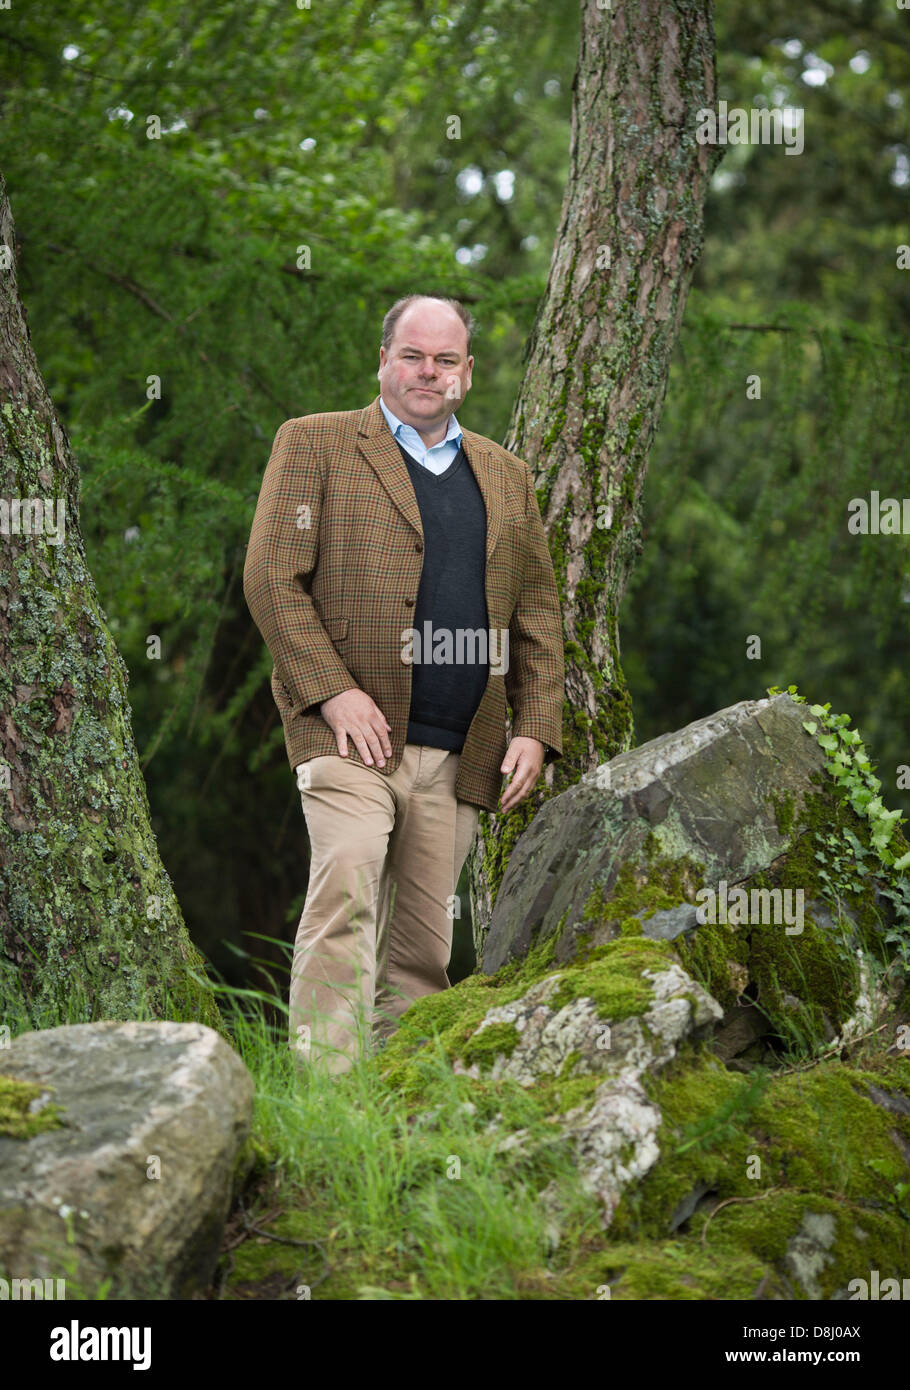 Walter Kohl, Sohn des ehemaligen Bundeskanzlers Helmut Kohl, posiert für den Fotografen in Königstein, Deutschland, 27. Mai 2013. Foto: FRANK RUMPENHORST Stockfoto